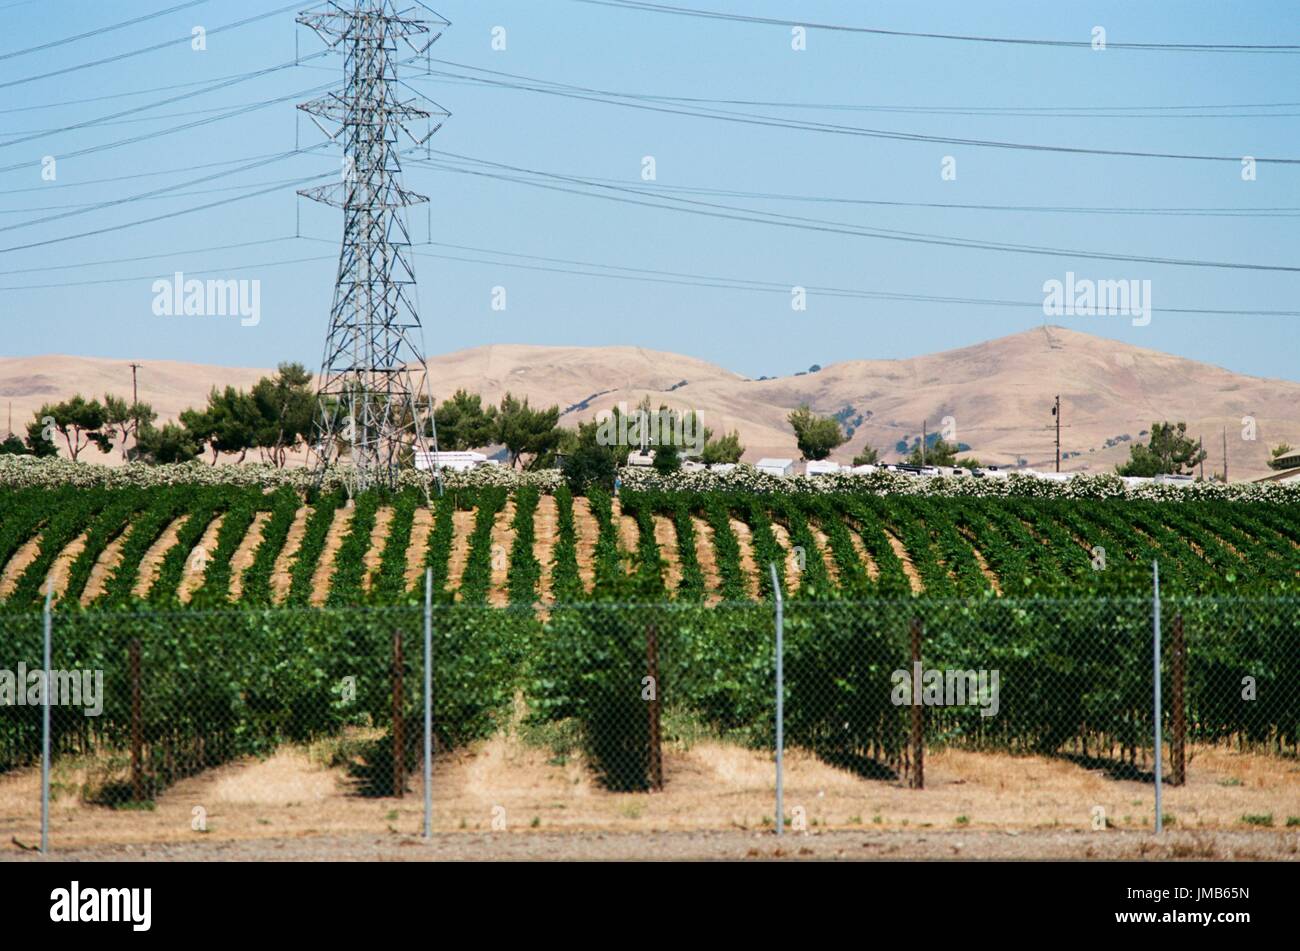 Reihen von Weinreben in einem Weinberg hinter einem Zaun, auf Hügeln von trockenem Stroh mit Hochspannung elektrische Linie sichtbar, in Livermore Wine Country, Livermore, Kalifornien, 25. Juni 2017. Stockfoto